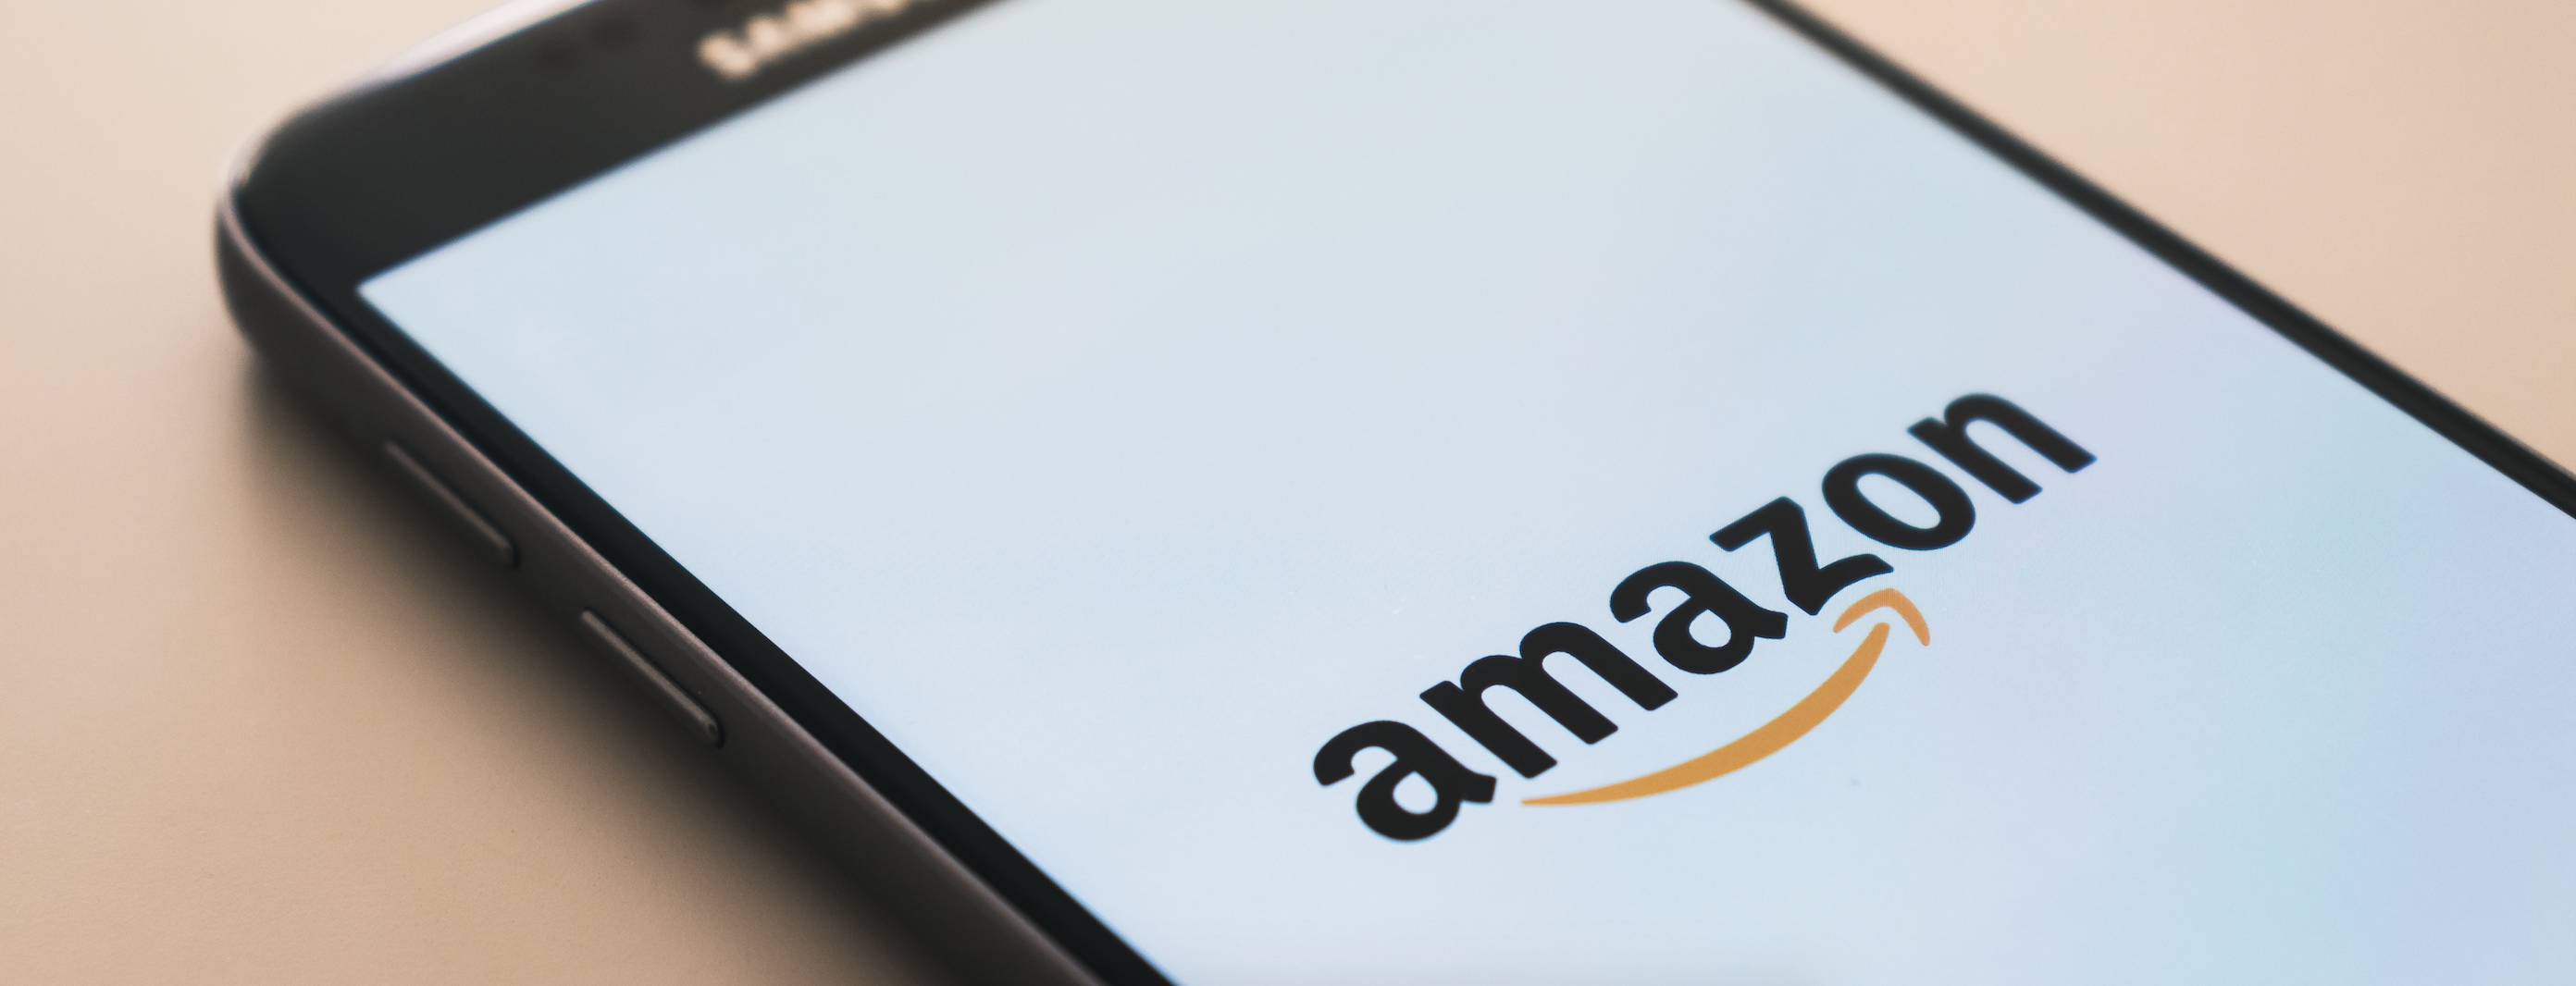 De kosten van verkopen op Amazon